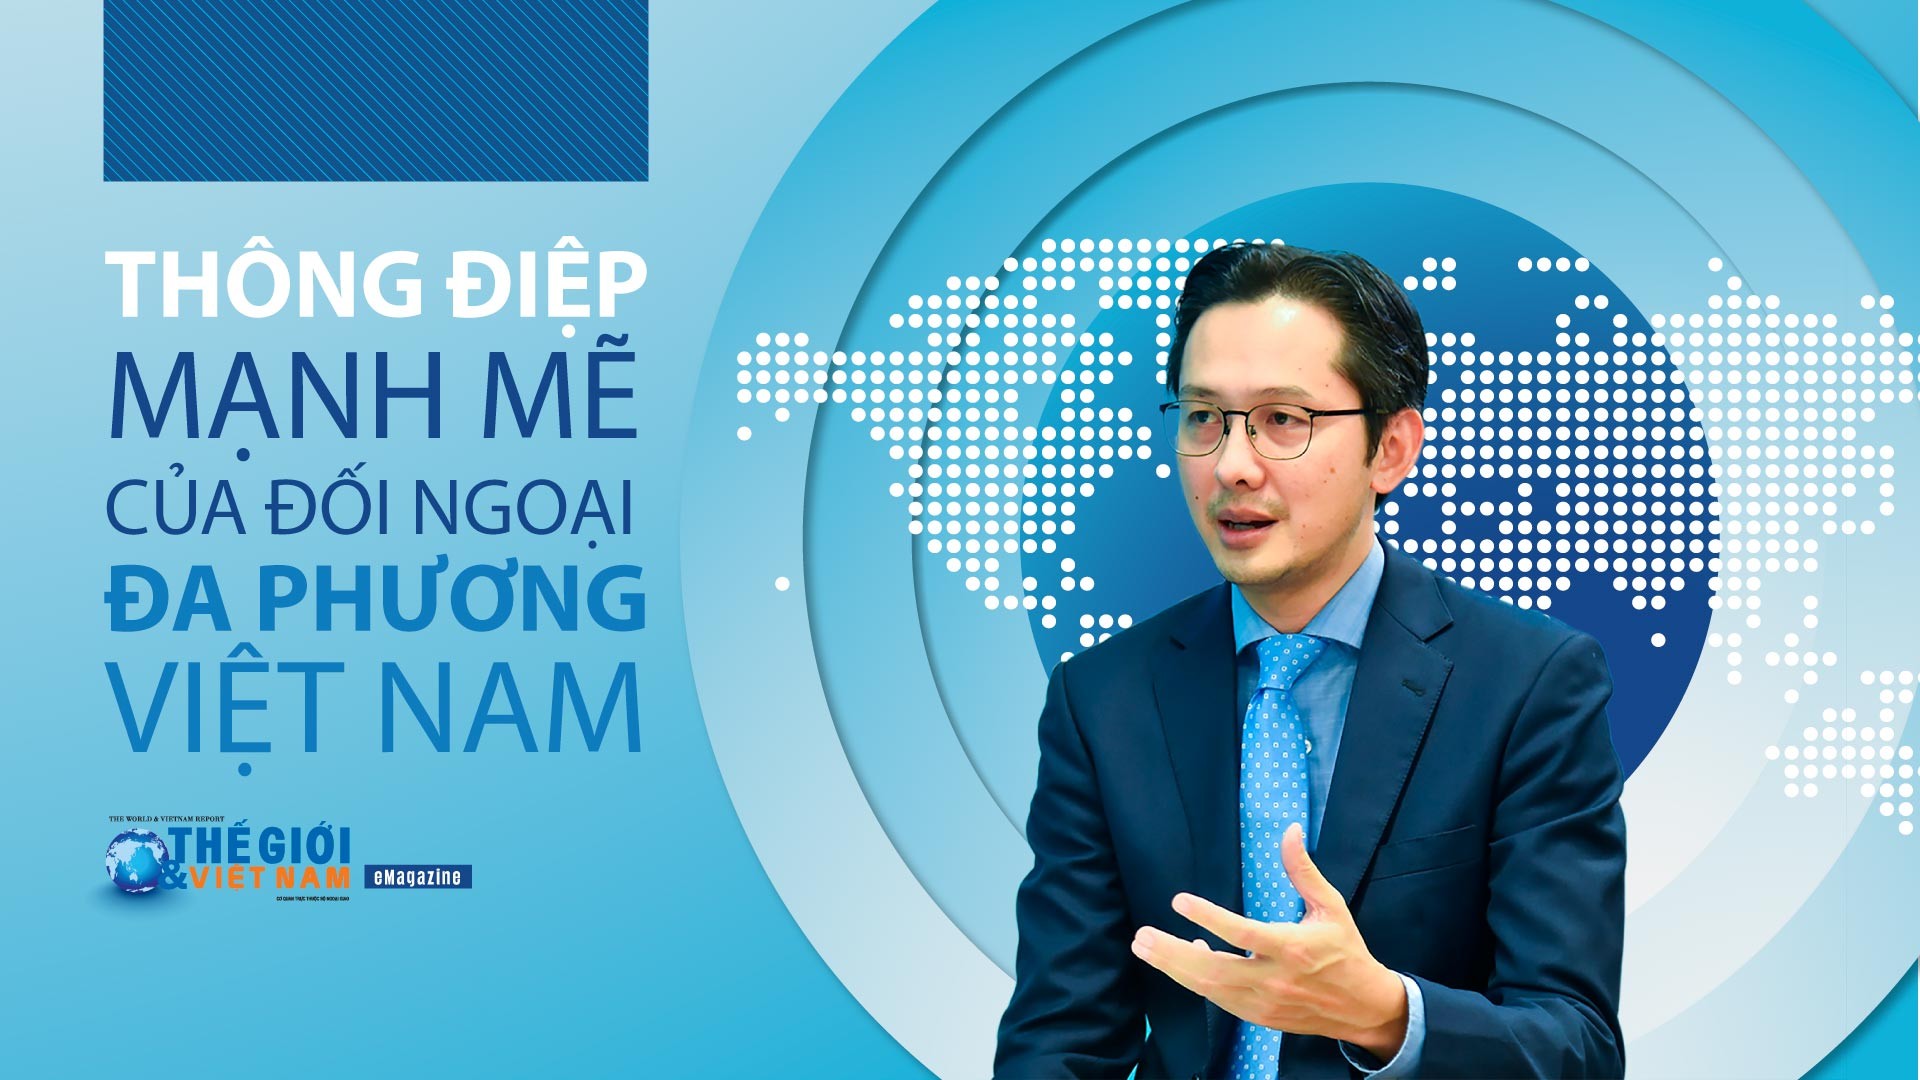 Thông điệp mạnh mẽ của đối ngoại đa phương Việt Nam